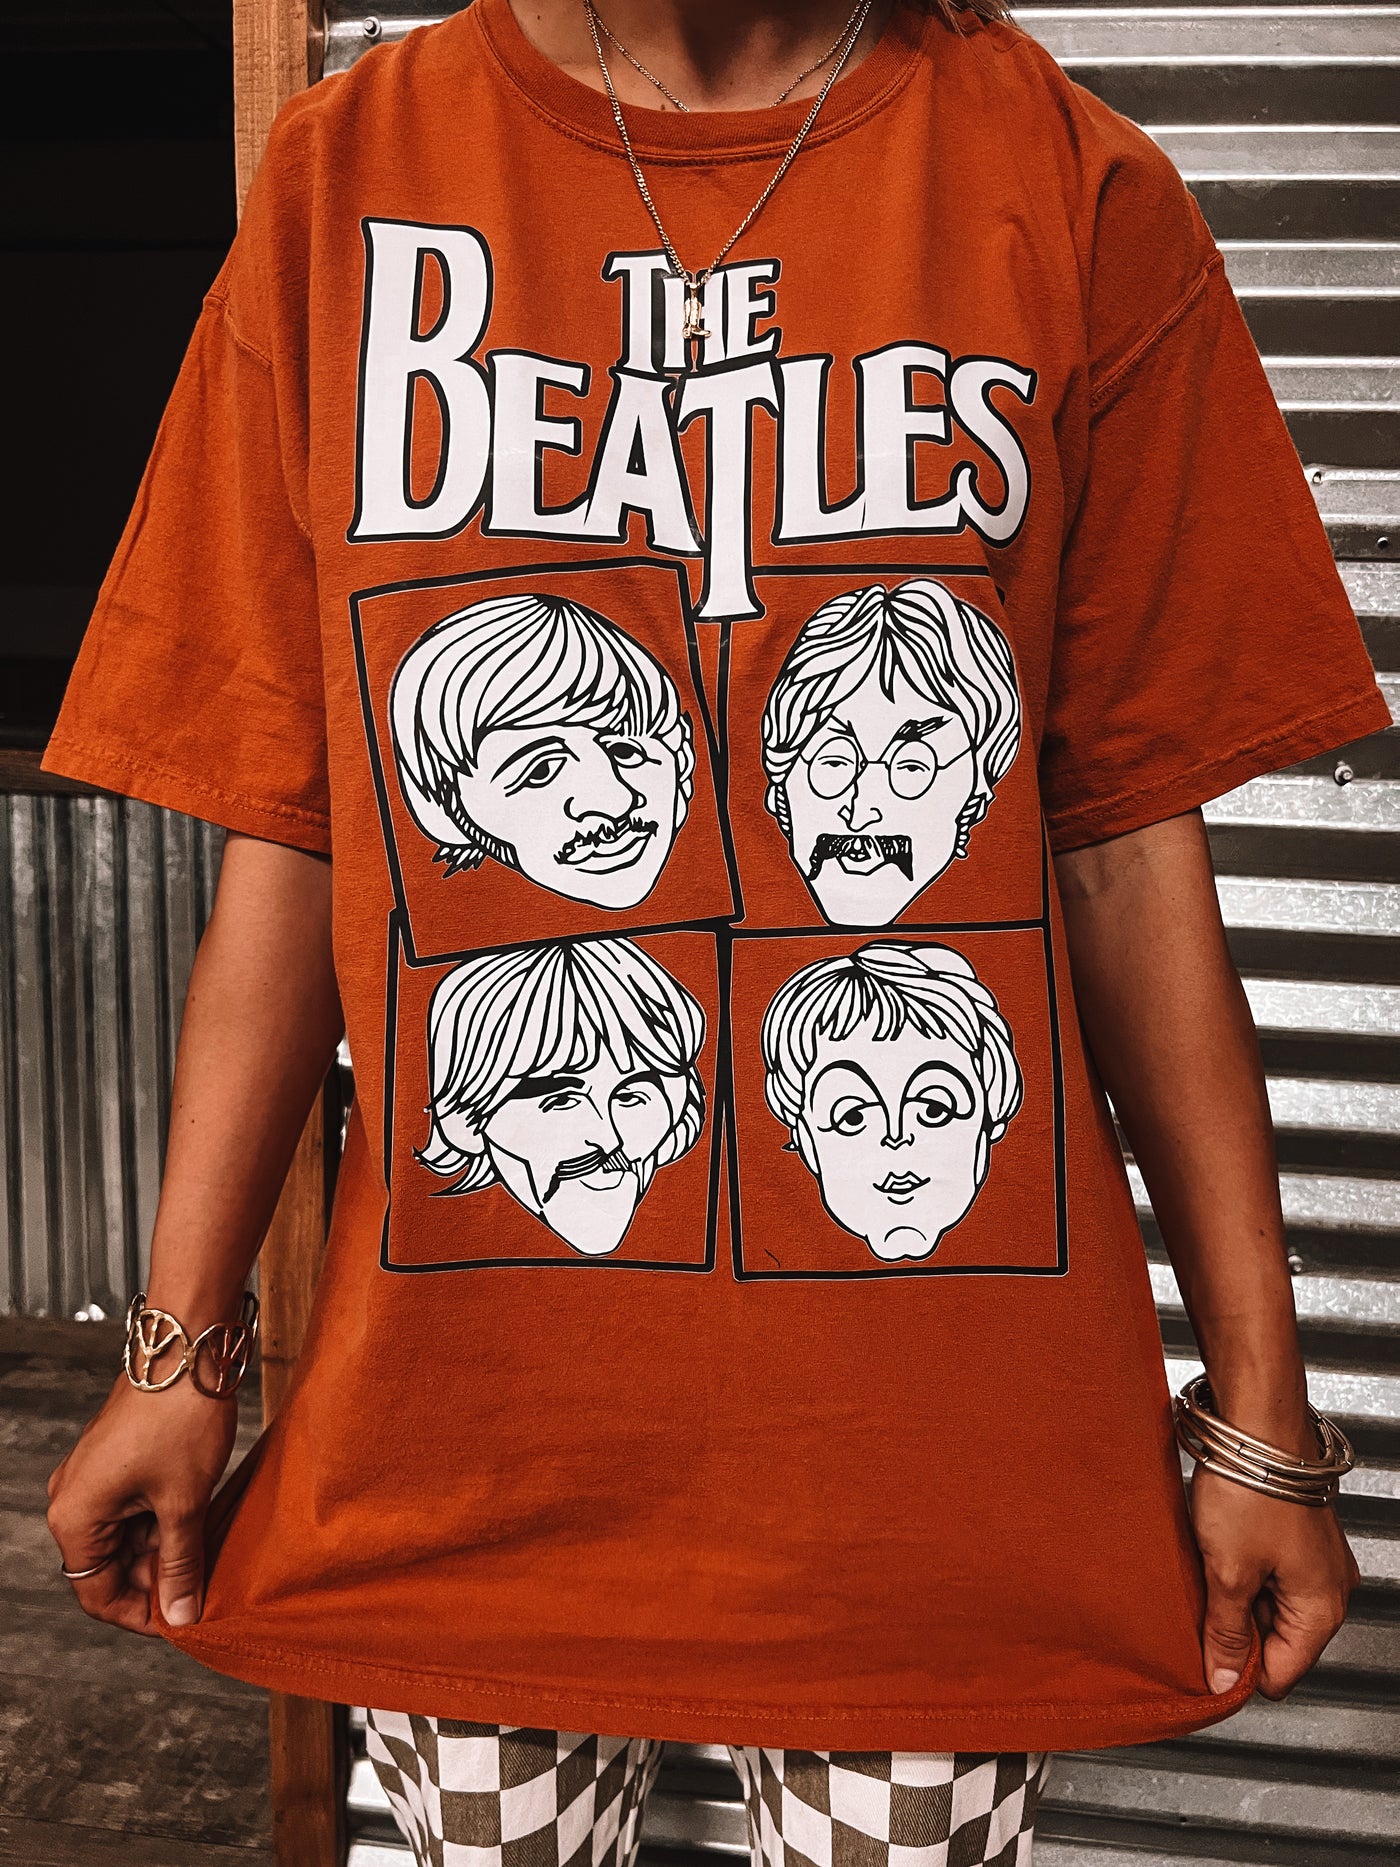 Abbey Road Tee/Sweatshirt